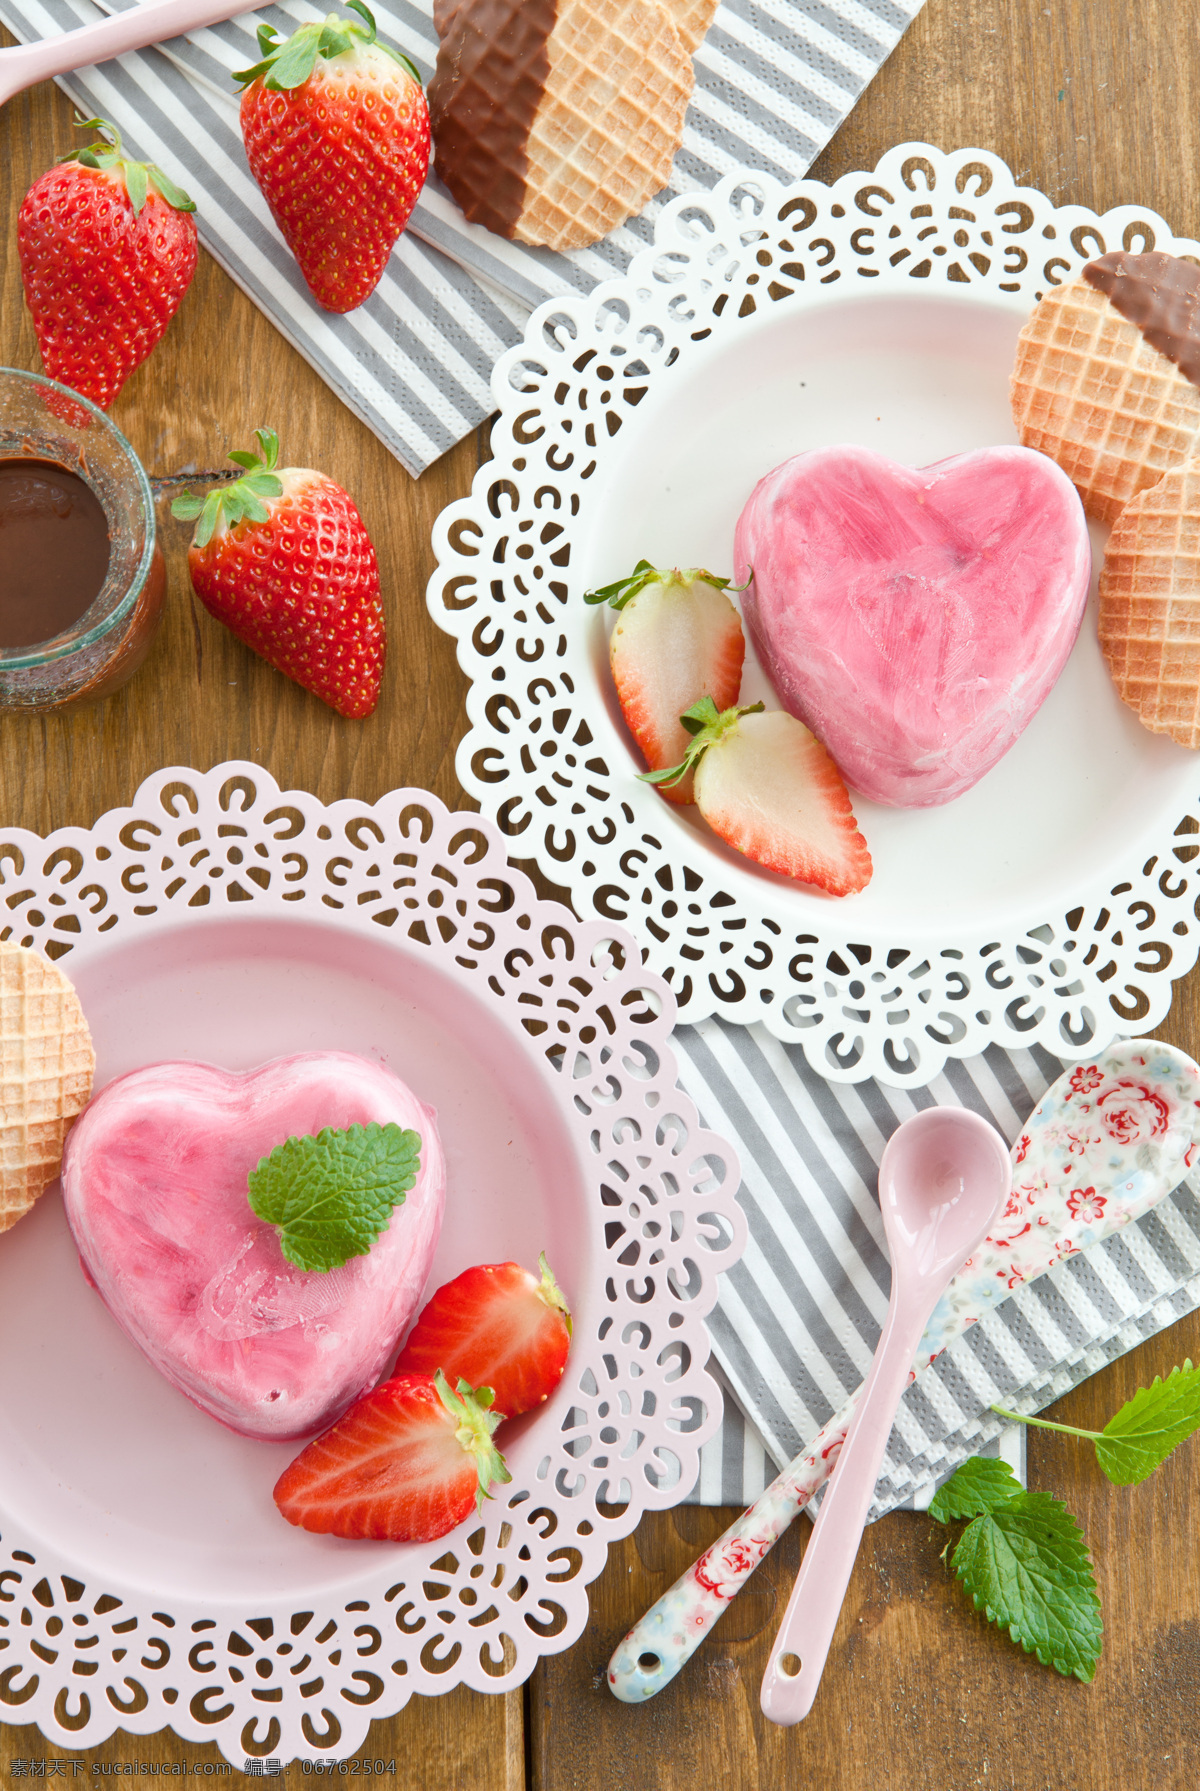 草莓 粉色 冰糕 草莓心形冰糕 勺子 彩色冰淇淋 冰激淋 清凉美食 夏季美味 冰淇淋背景 美食图片 餐饮美食